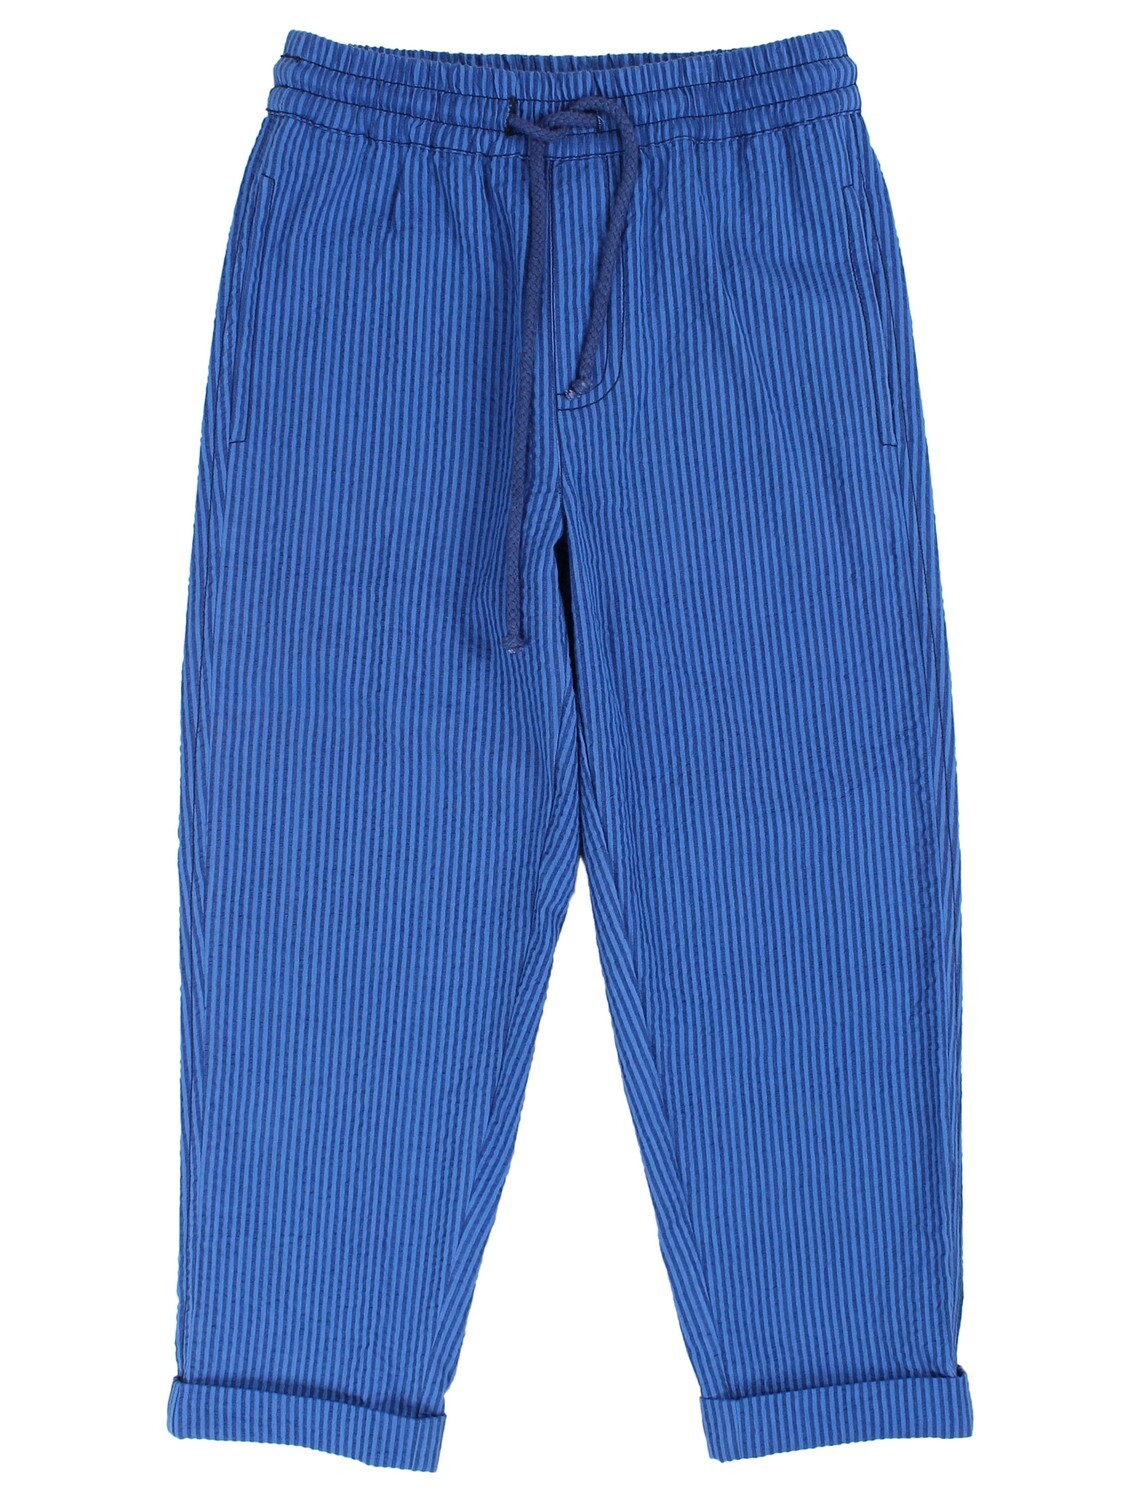 Danefae Seersucker Pants - luftige lange Hose (blau)